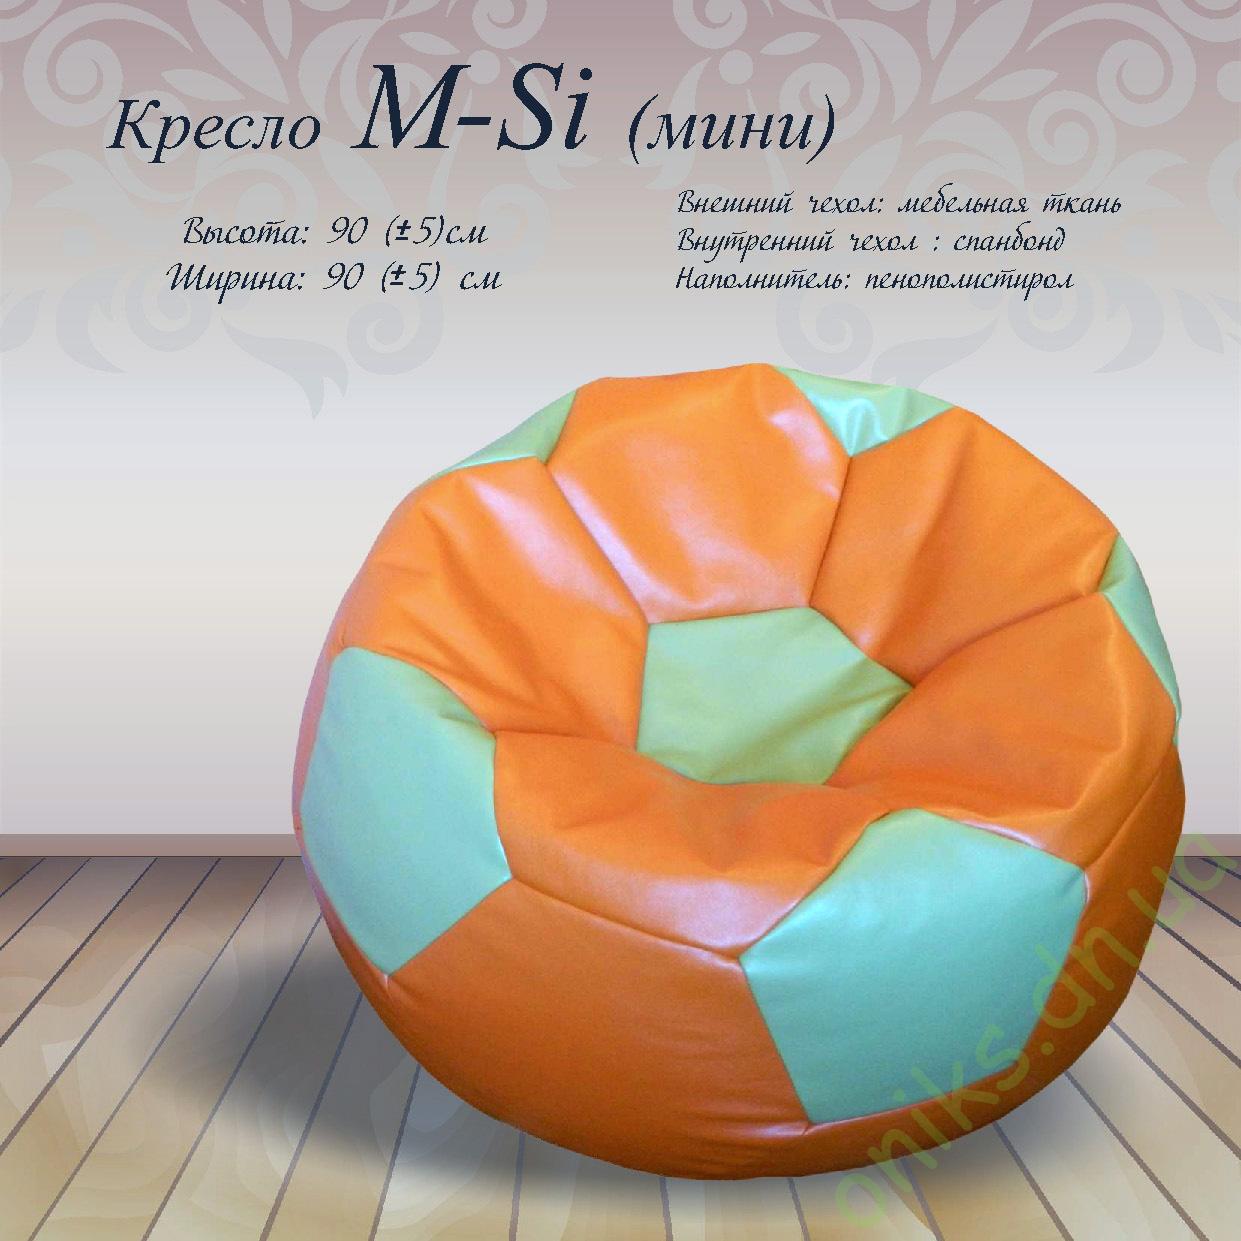 Купить кресло M-Si (мини) в Донецке